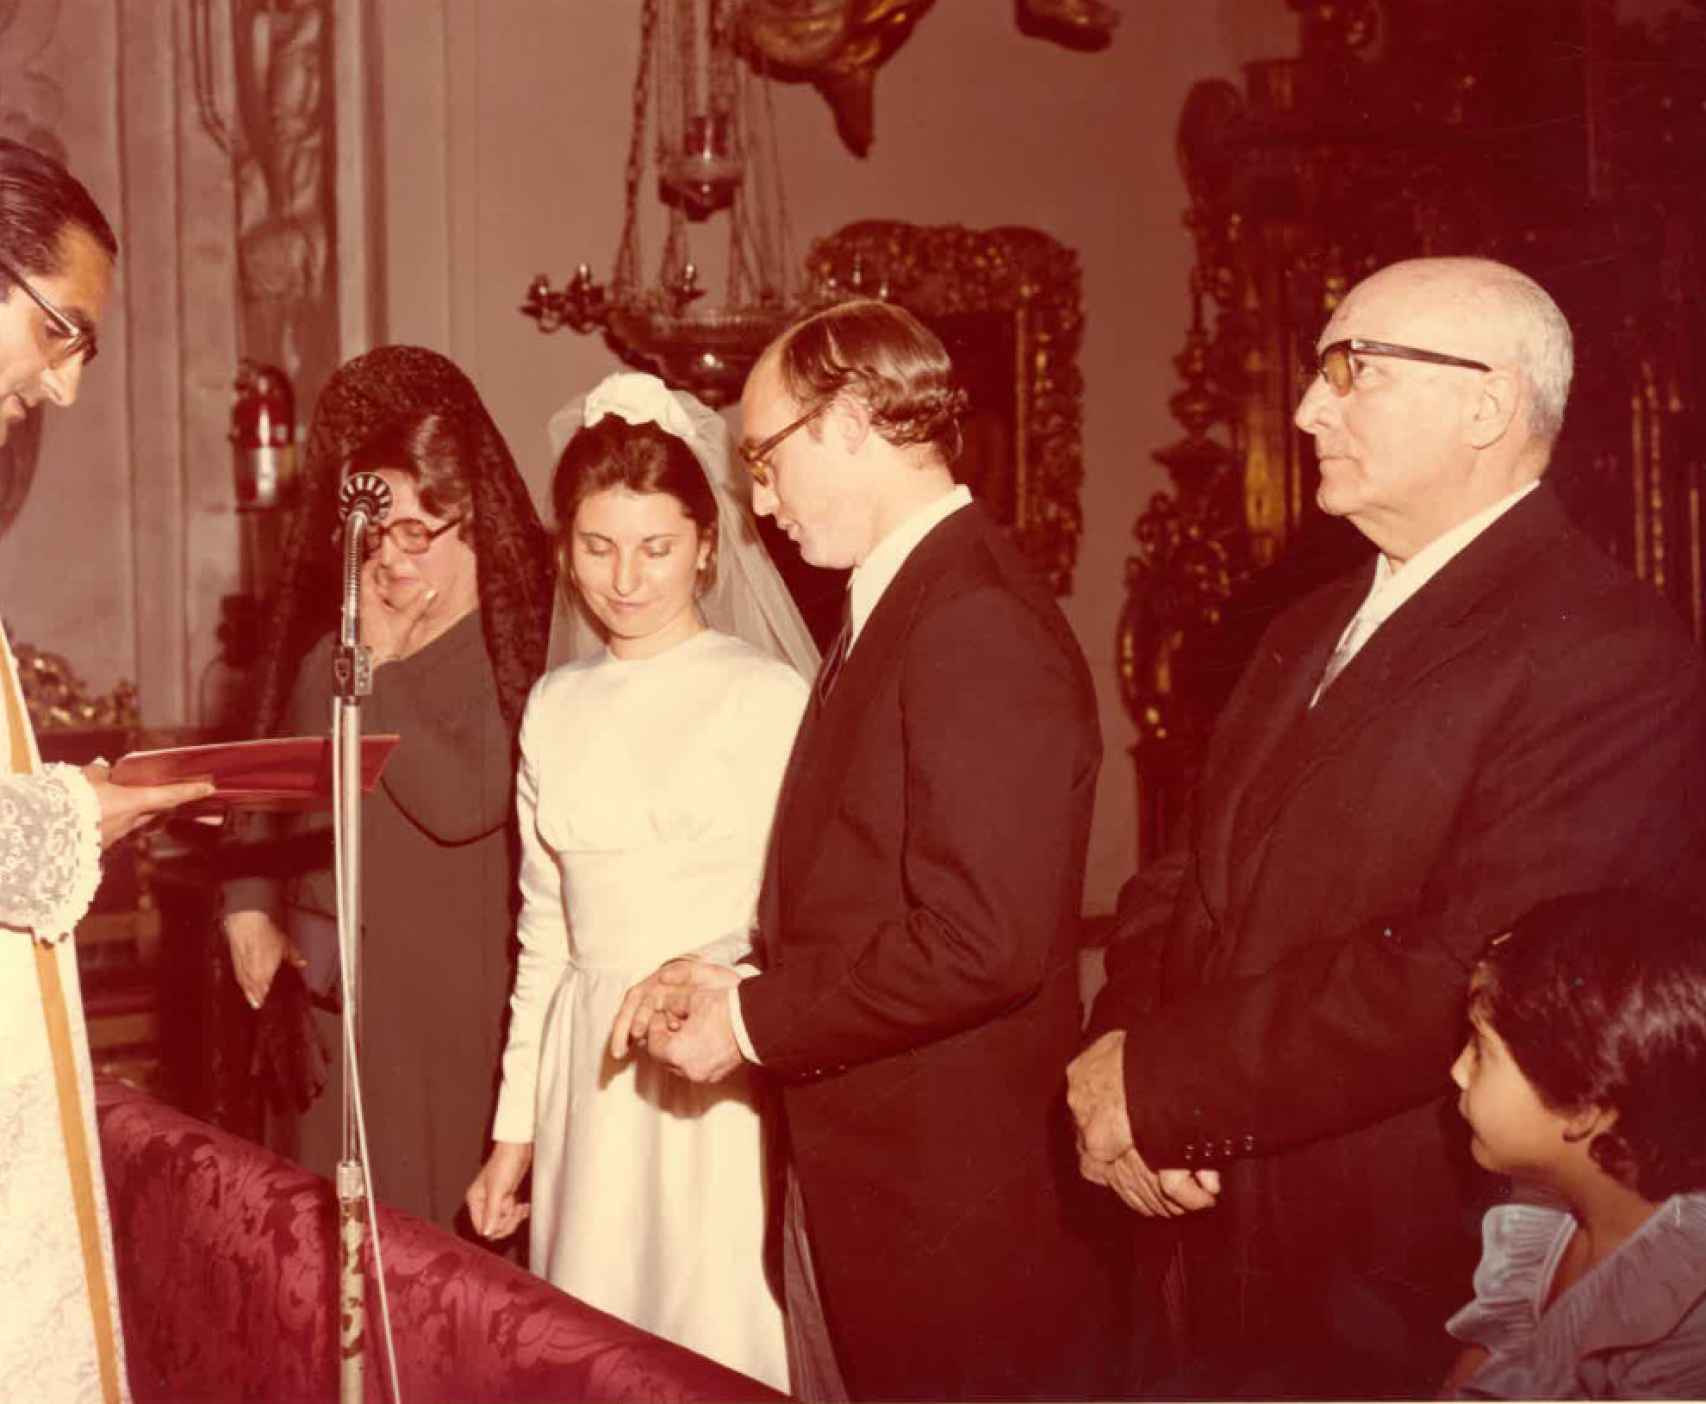 Fina y José Antonio, en el intercambio de alianzas, el 31 de marzo de 1974.